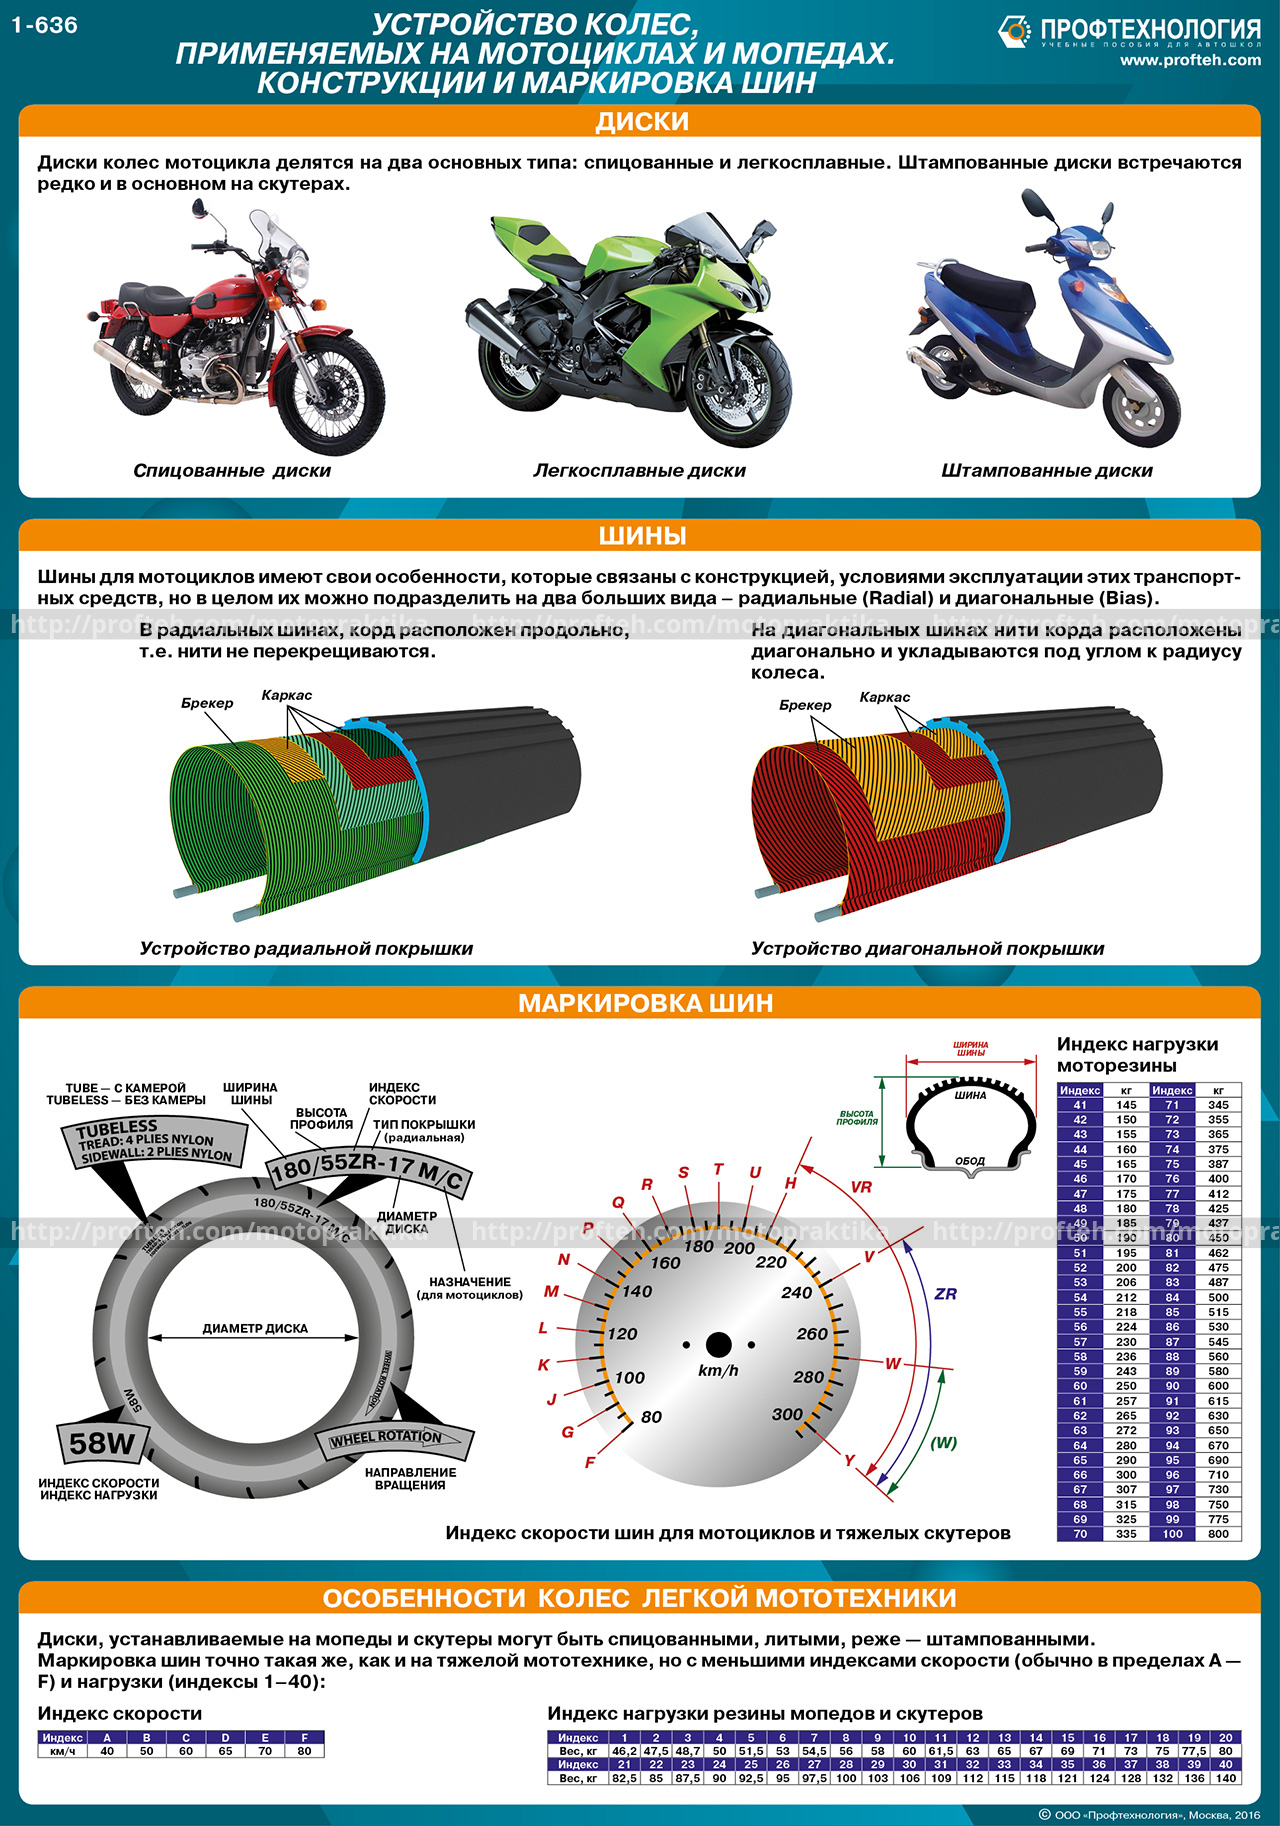 Размеры мотошин. Как определить Размерность резины мотоцикла. Таблица размеров покрышек мотоцикла. Параметры мото камер и покрышек таблица. Таблица размеров камер для колес мотоциклов.